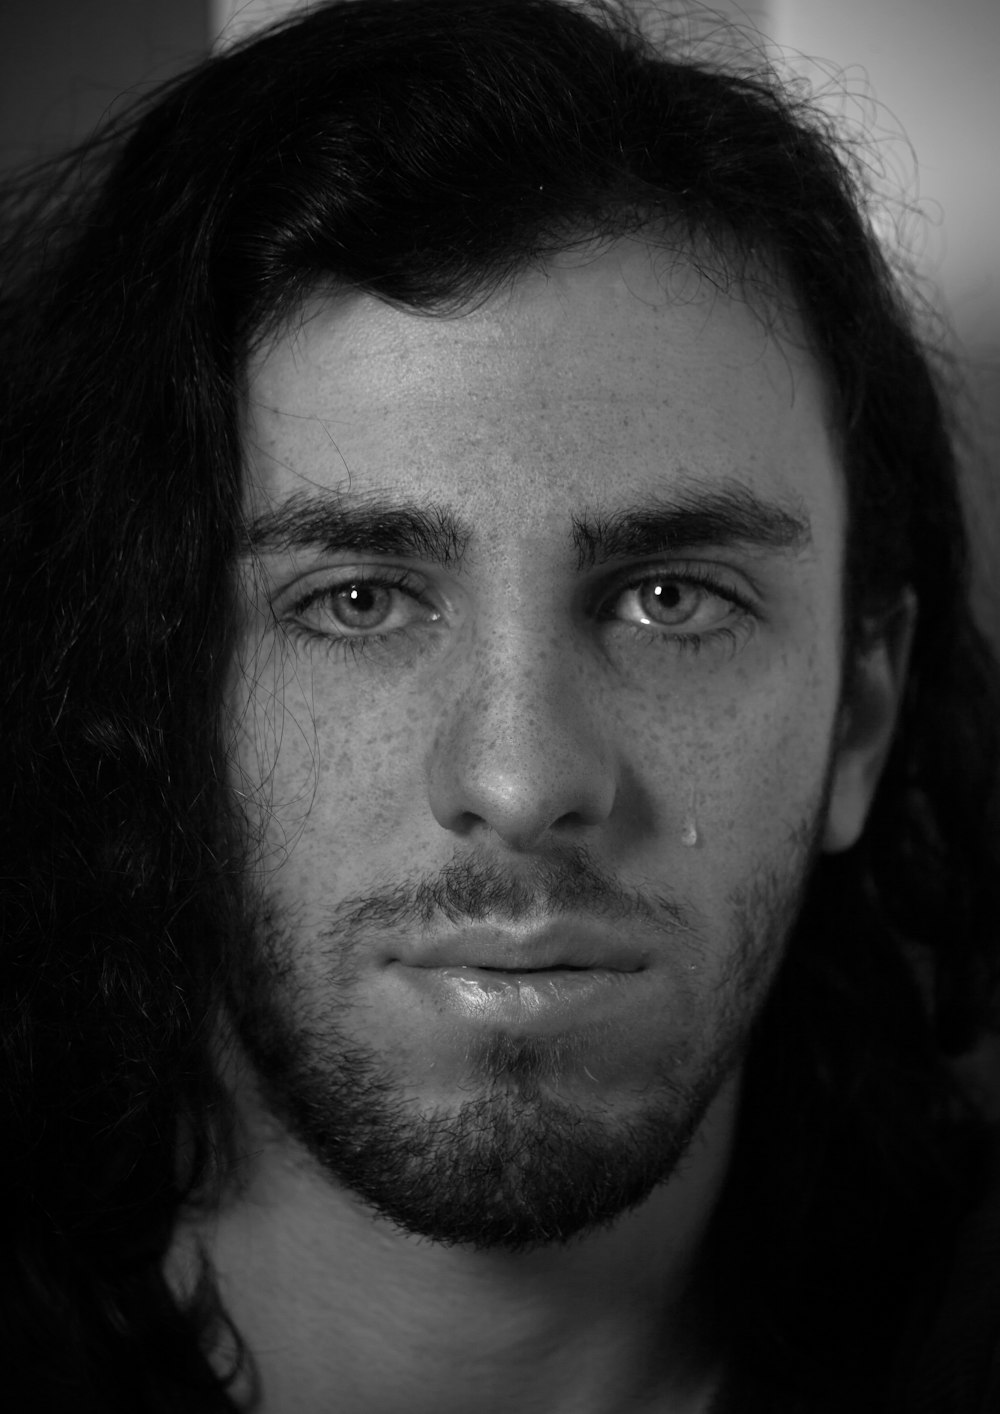 Una foto in bianco e nero di un uomo con i capelli lunghi